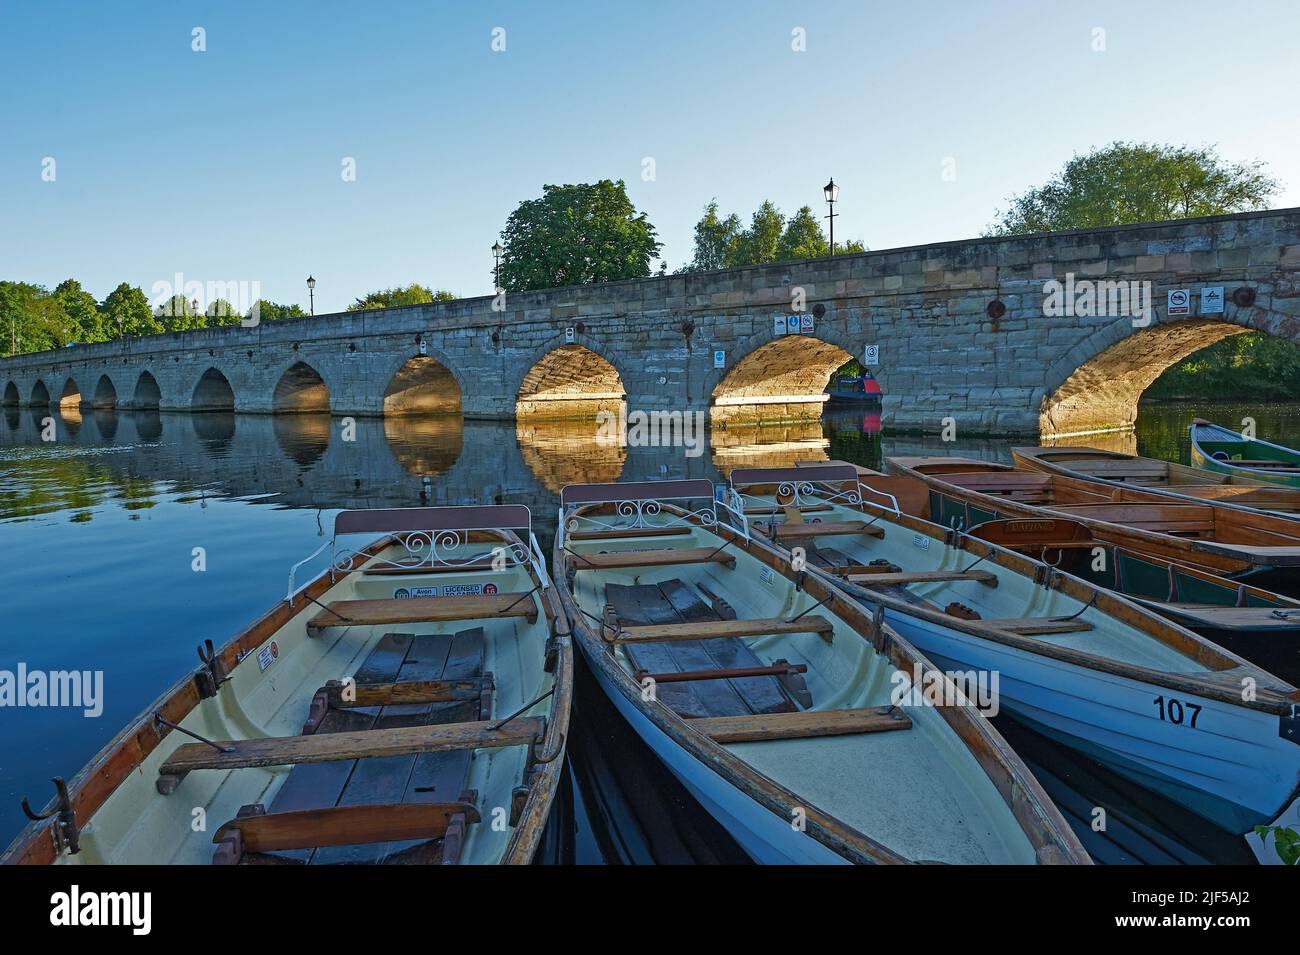 Tagesmiete Ruderboote, die auf dem Fluss Avon in Stratford-upon-Avon festgemacht sind, mit der Clopton Bridge im Hintergrund. Stockfoto